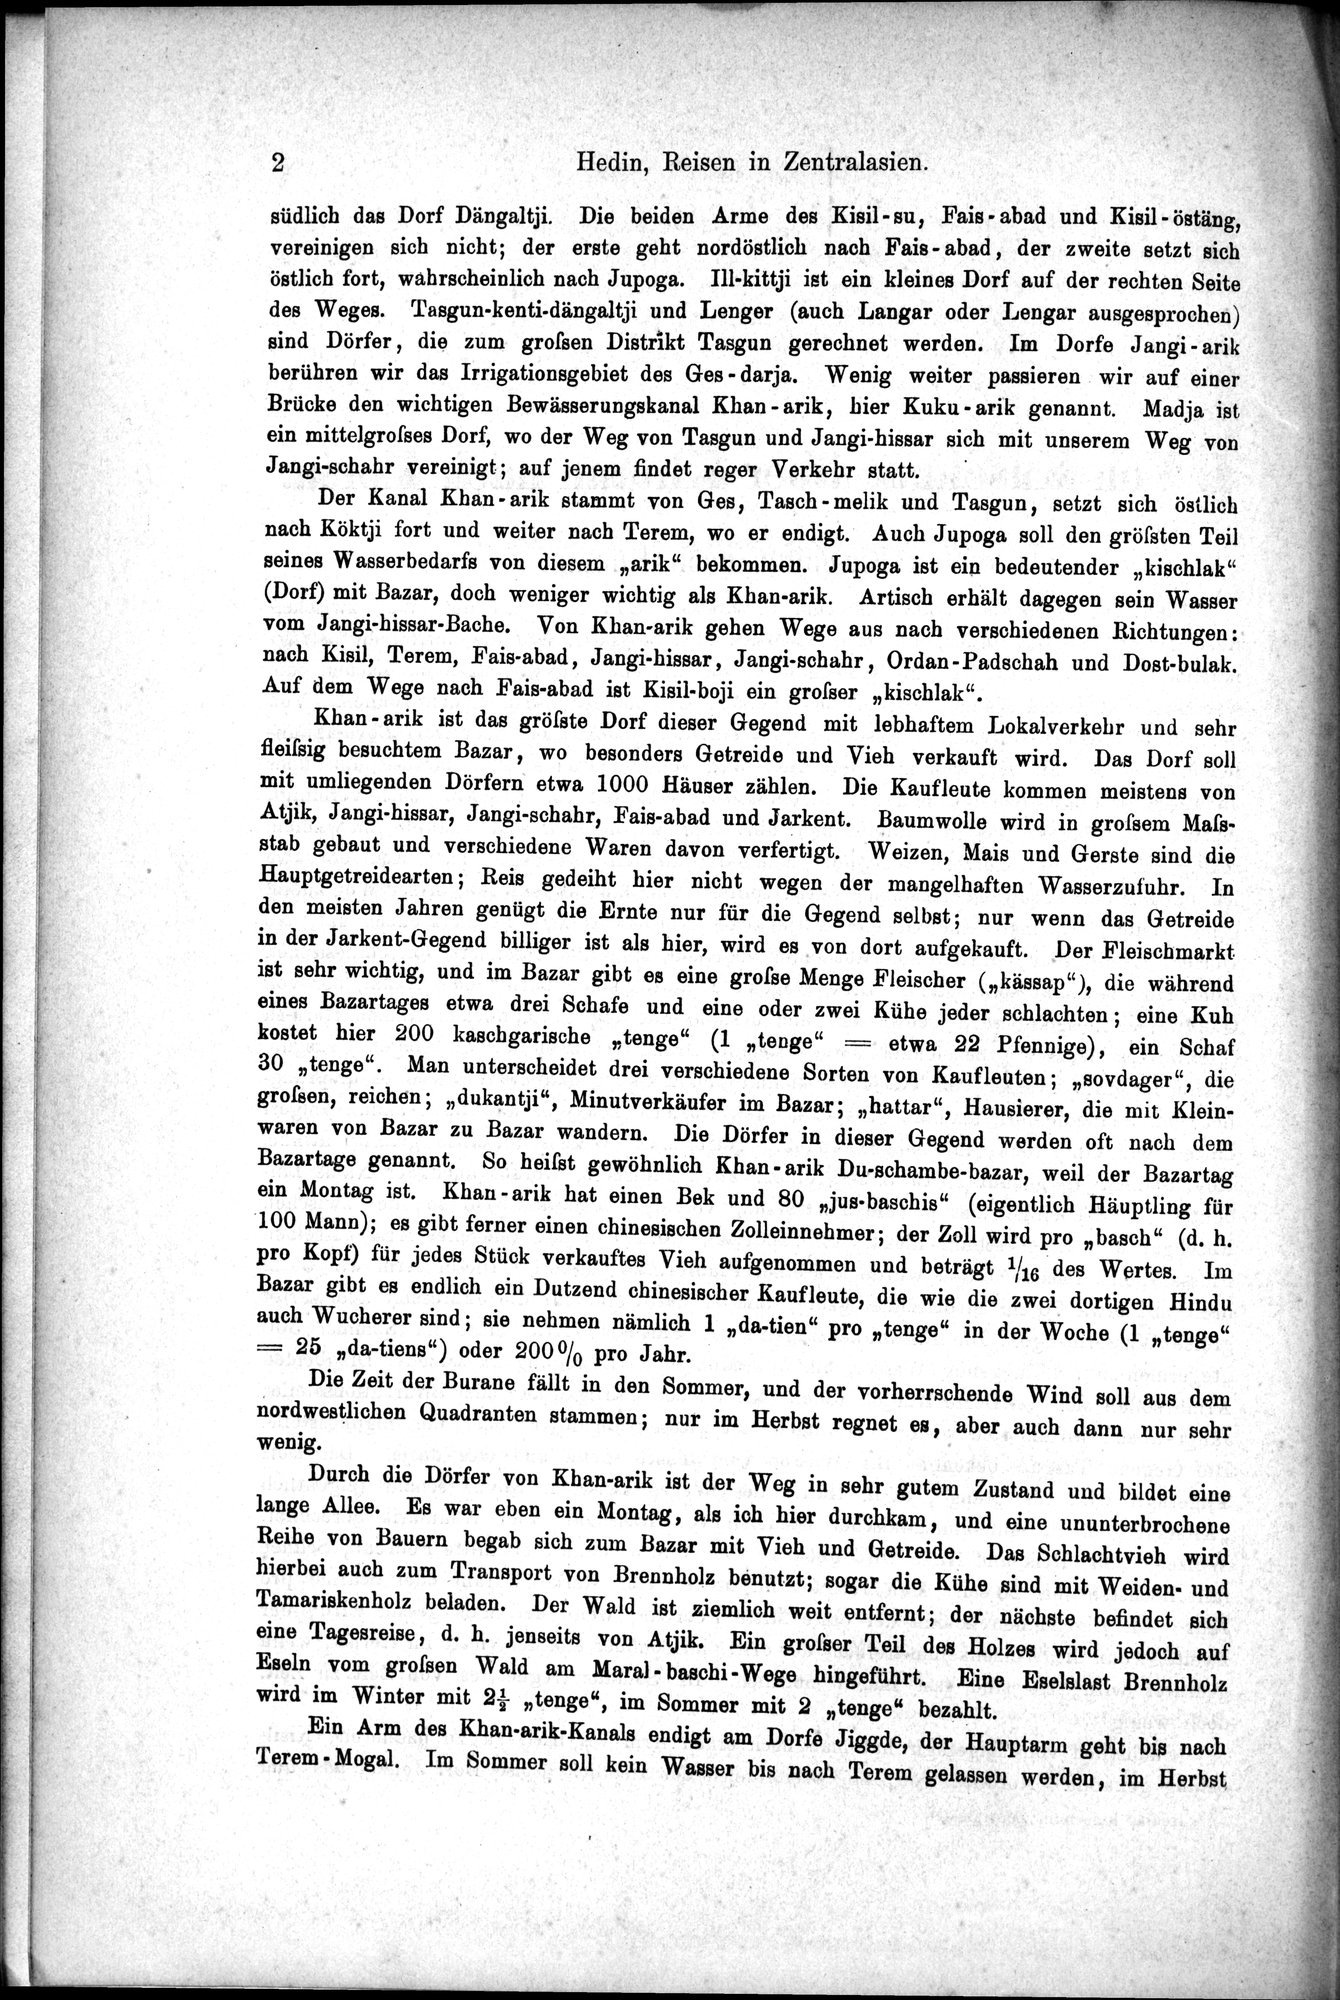 Die Geographische-Wissenschaftlichen Ergebnisse meiner Reisen in Zentralasien, 1894-1897 : vol.1 / Page 14 (Grayscale High Resolution Image)